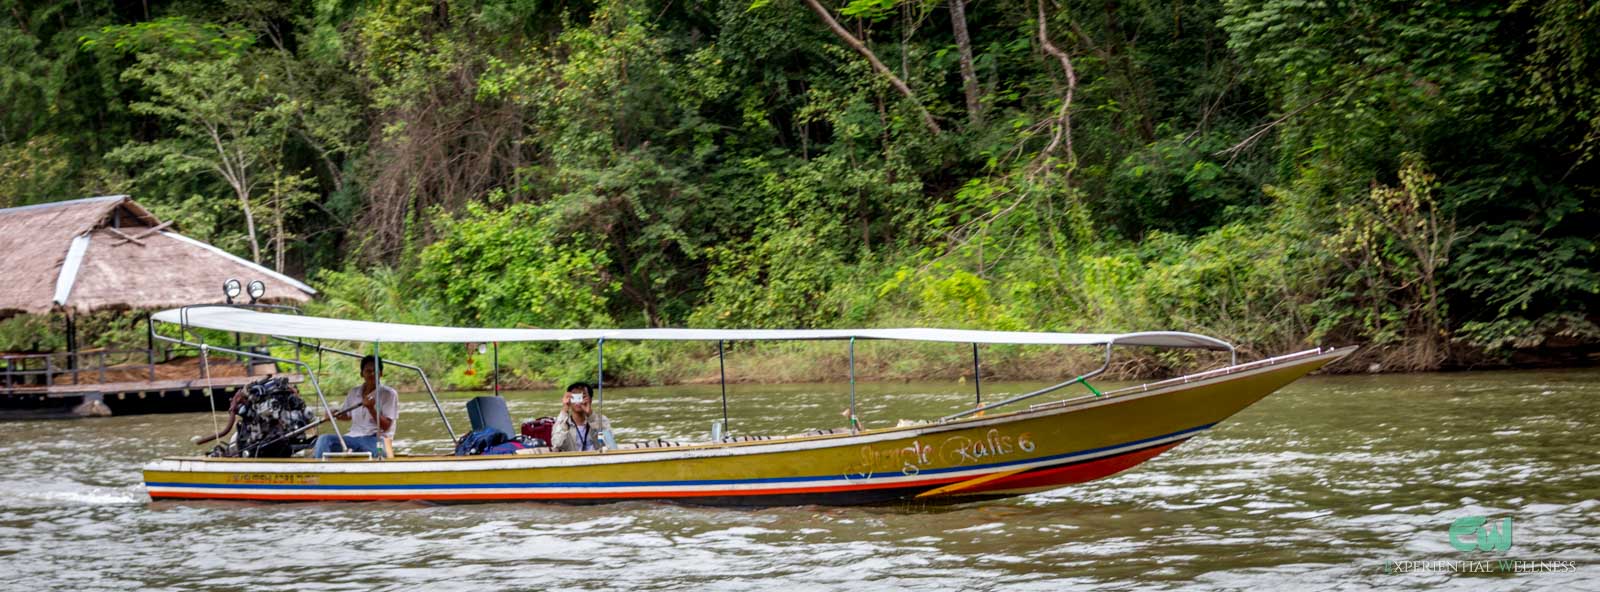 A long-tail boat is cruising through the river in Kanchanaburi